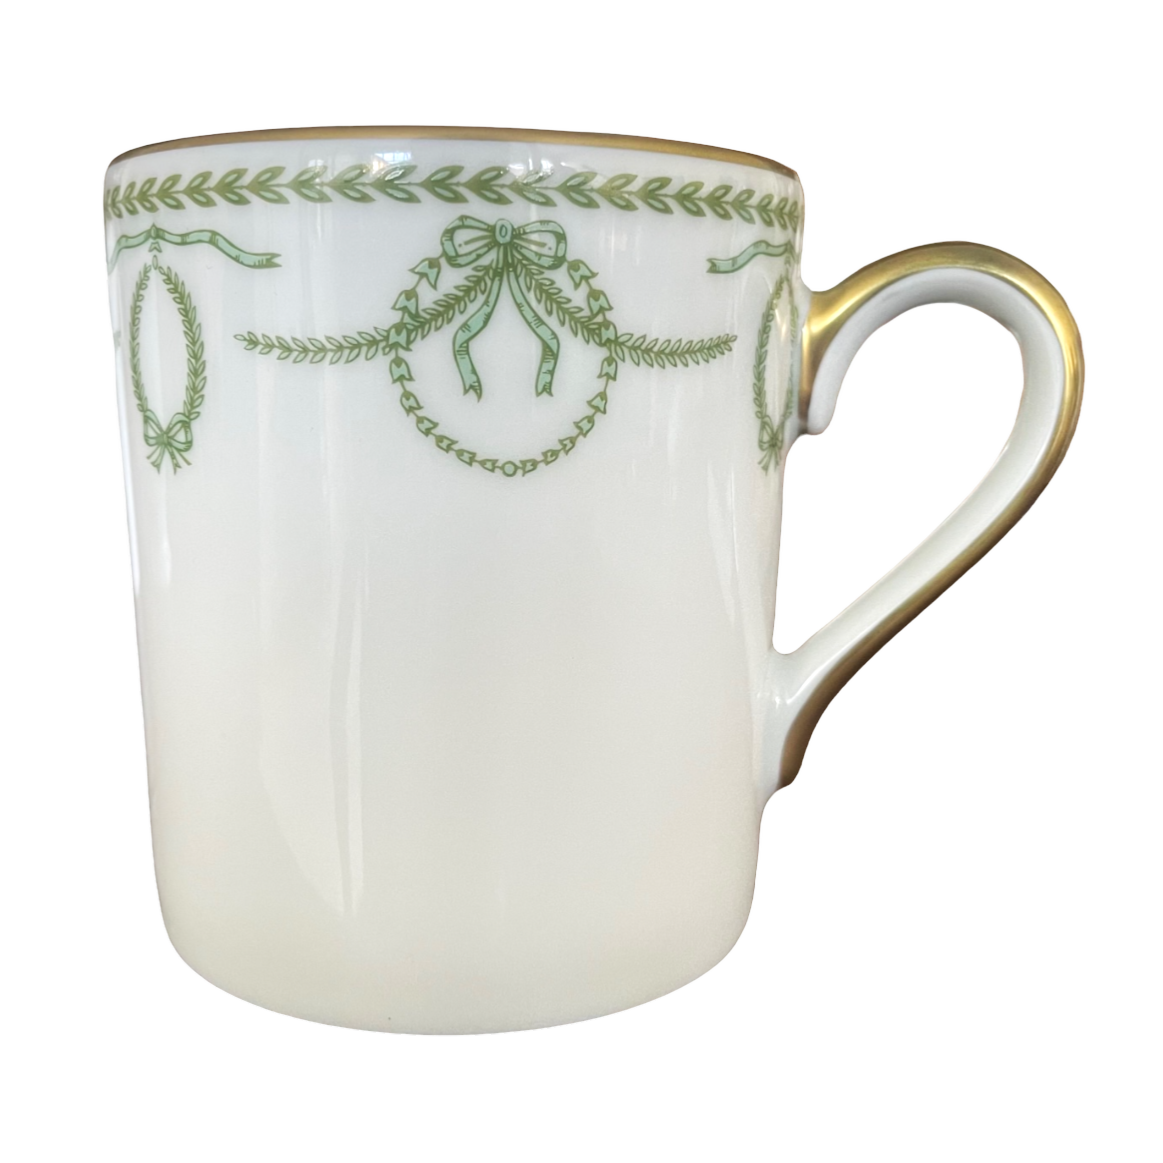 Cheverny vert - Mug 0.30 litre